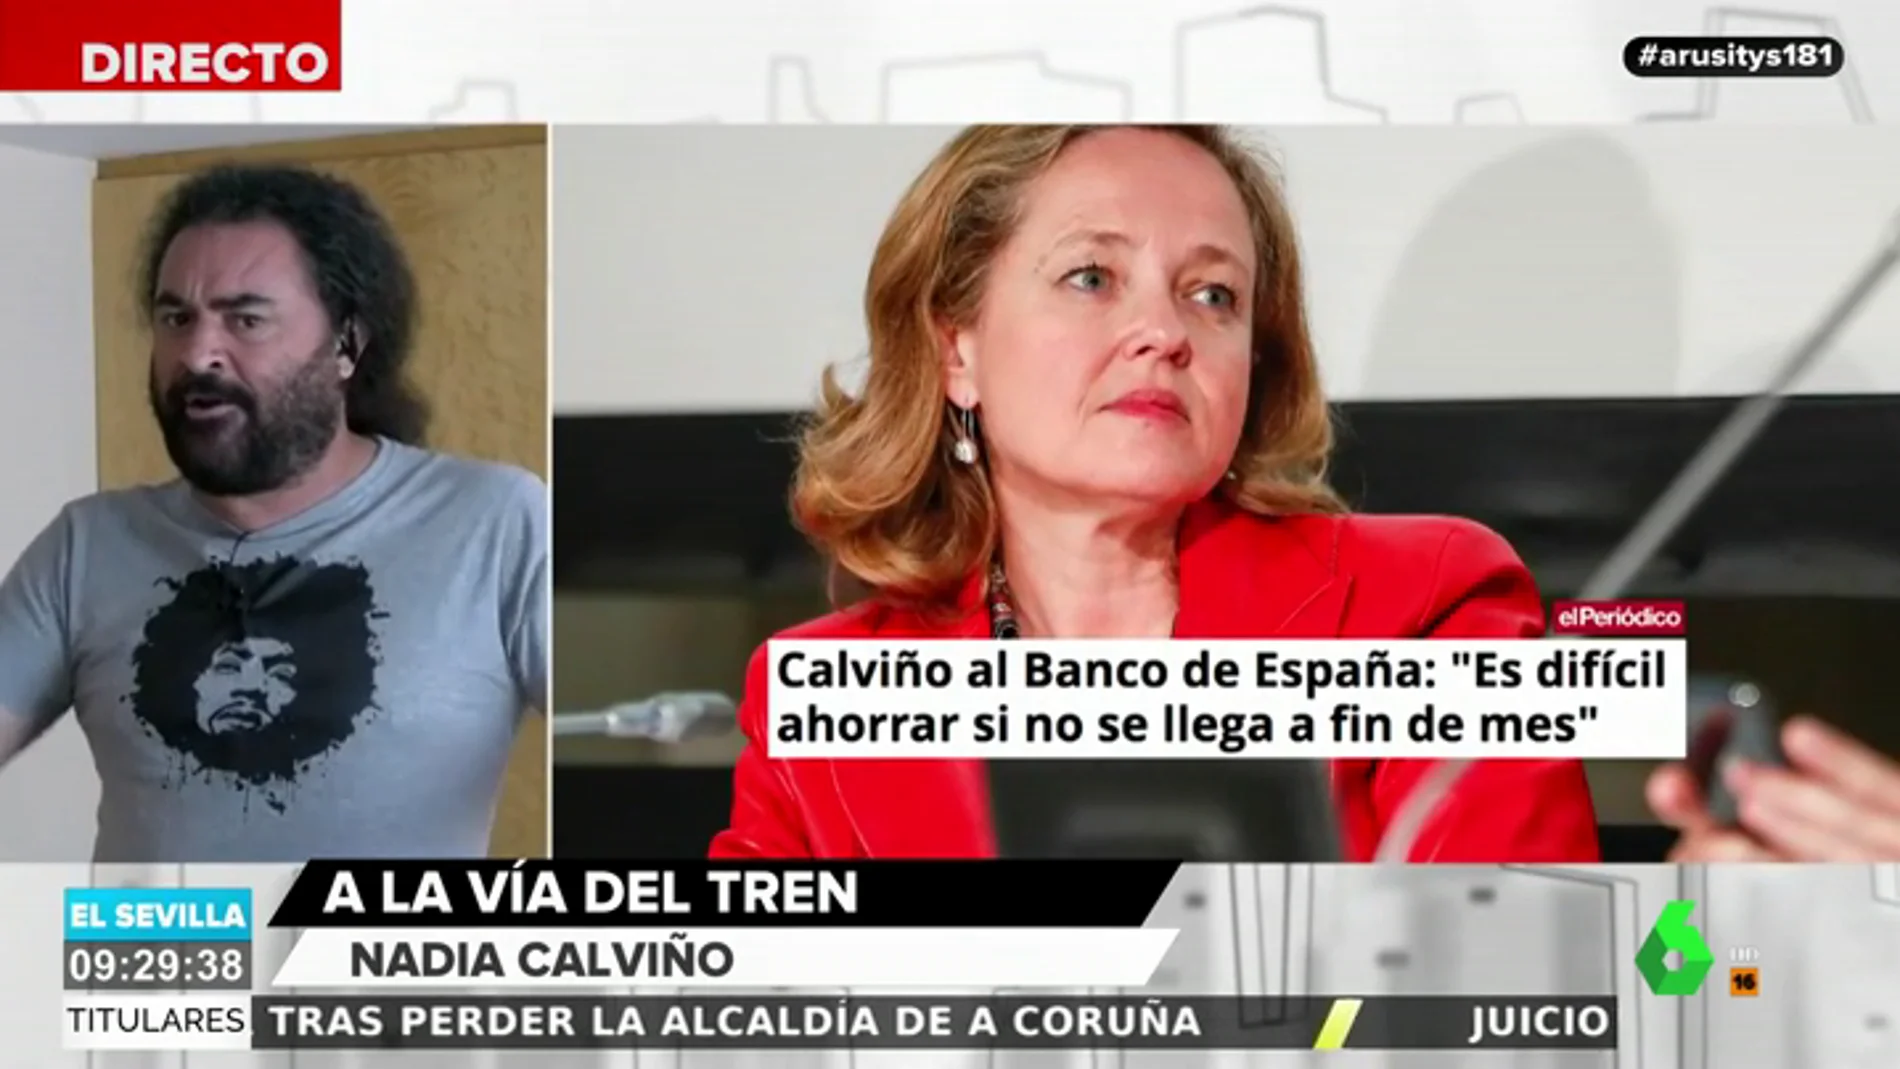 El Sevilla estalla contra el Banco de España por pedir a los ciudadanos que ahorren dinero: "Meteos la lengua en el culo"